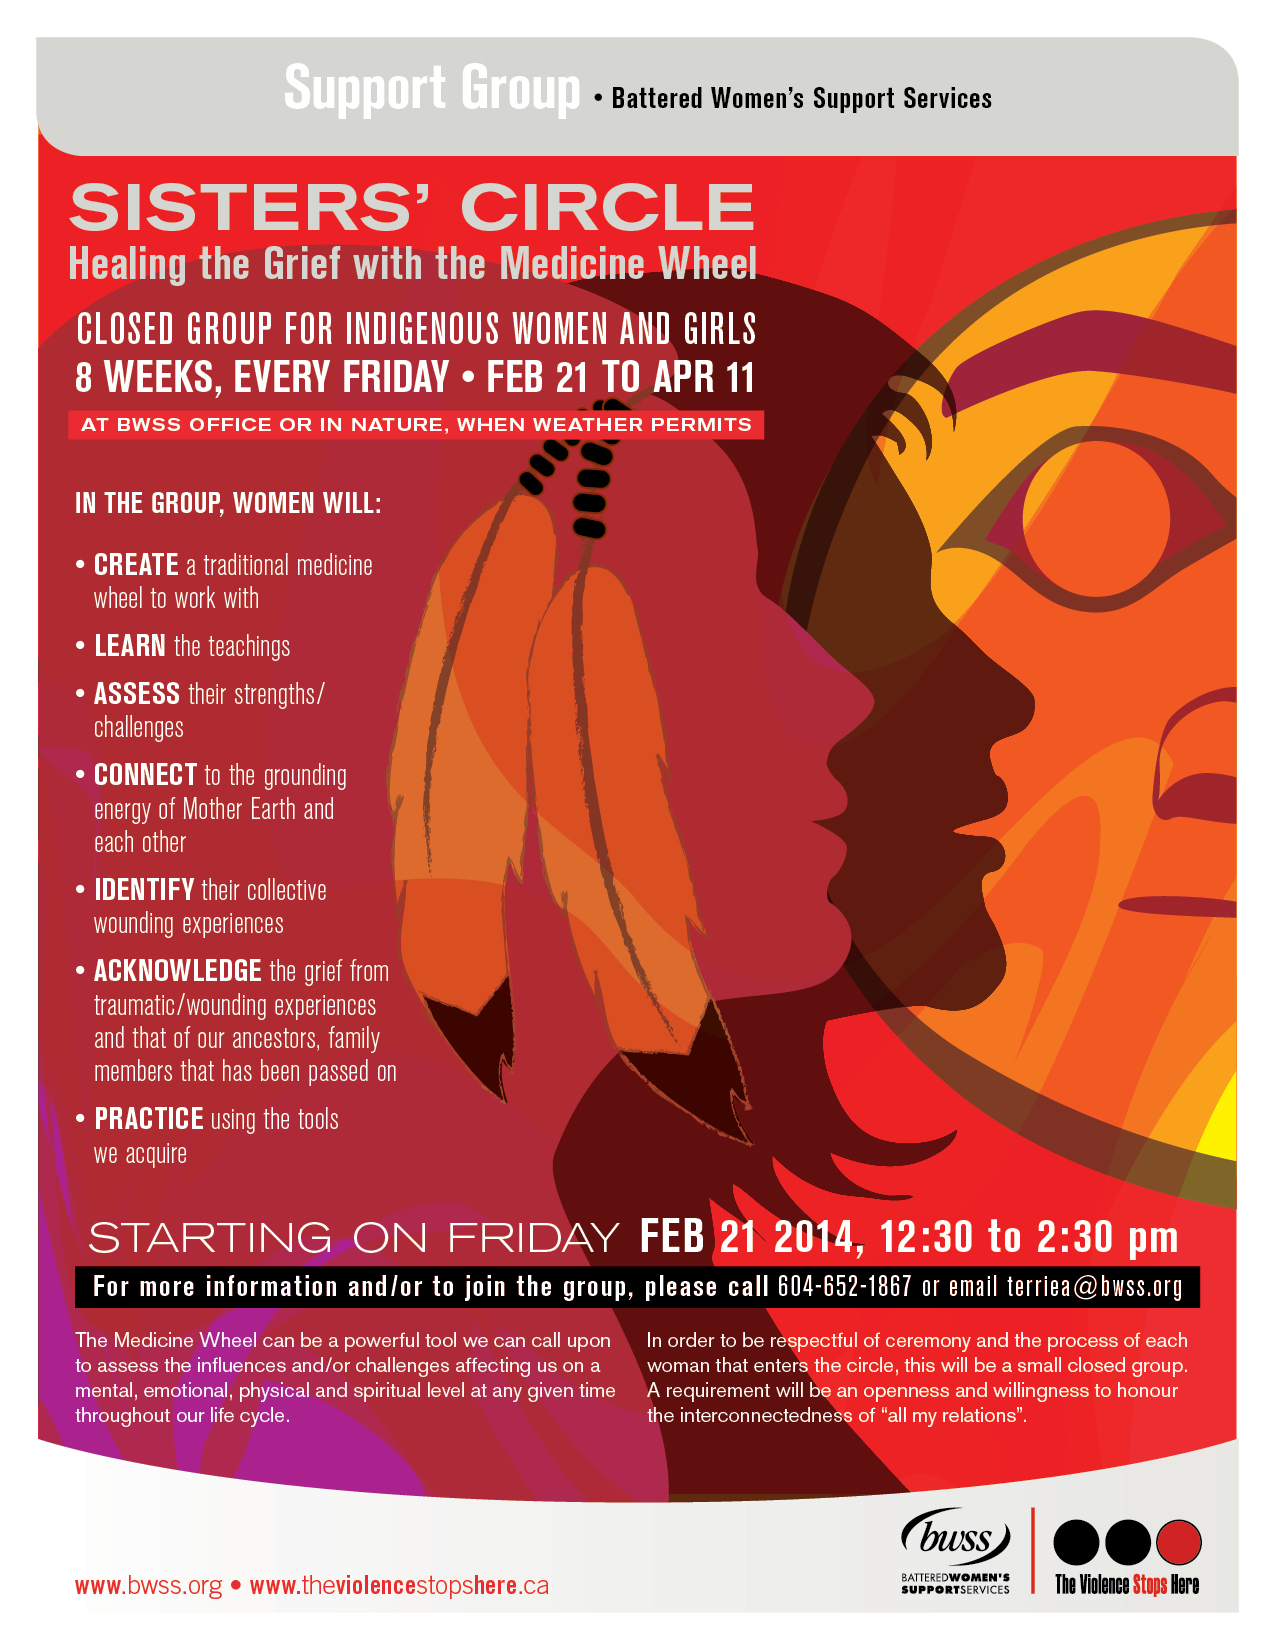 BWSS Sisters' Circle